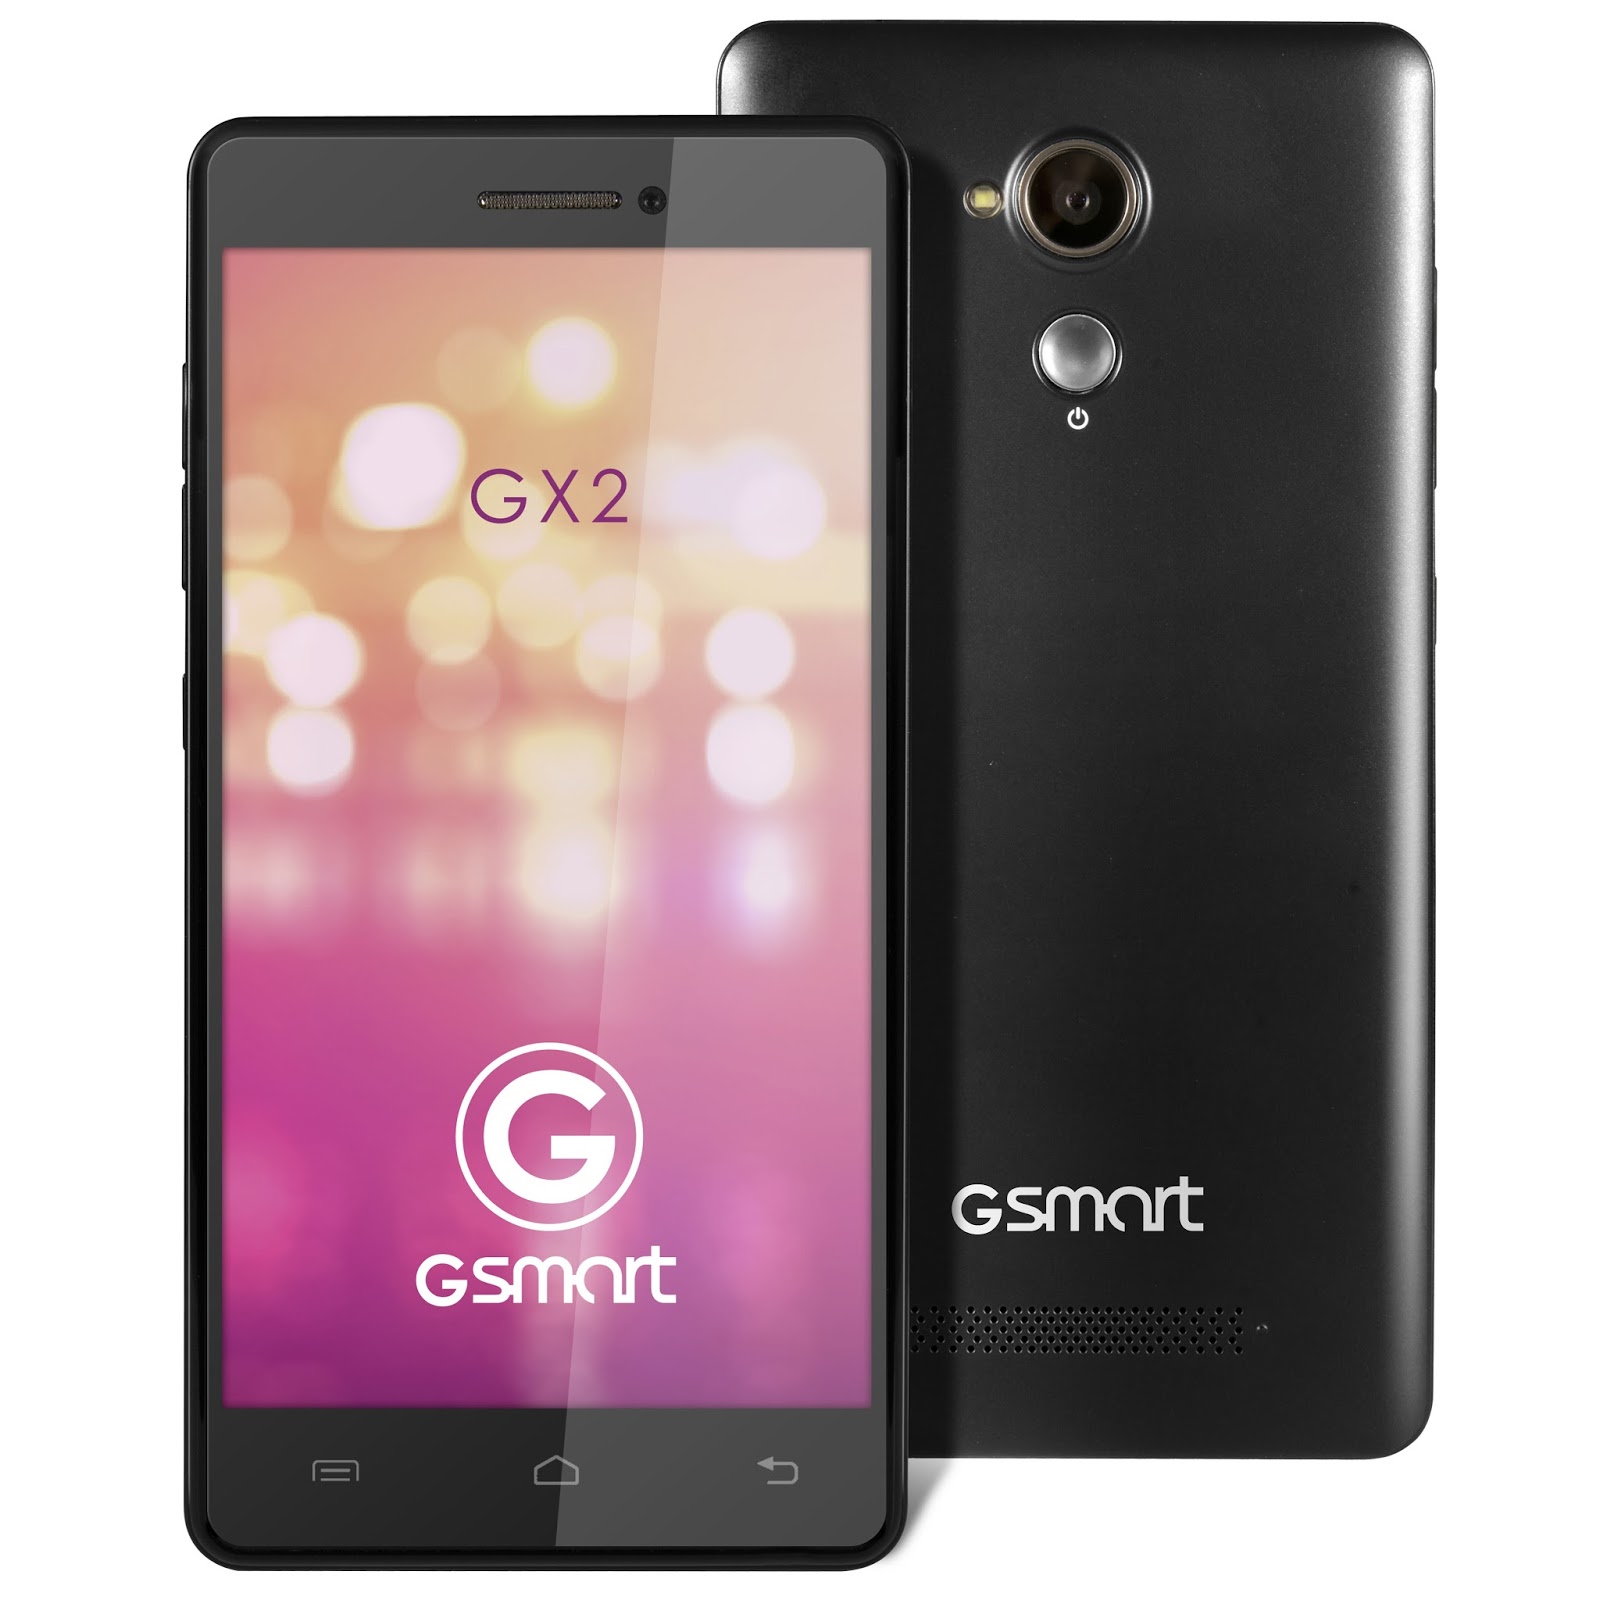 Gigabyte G Smart GX2